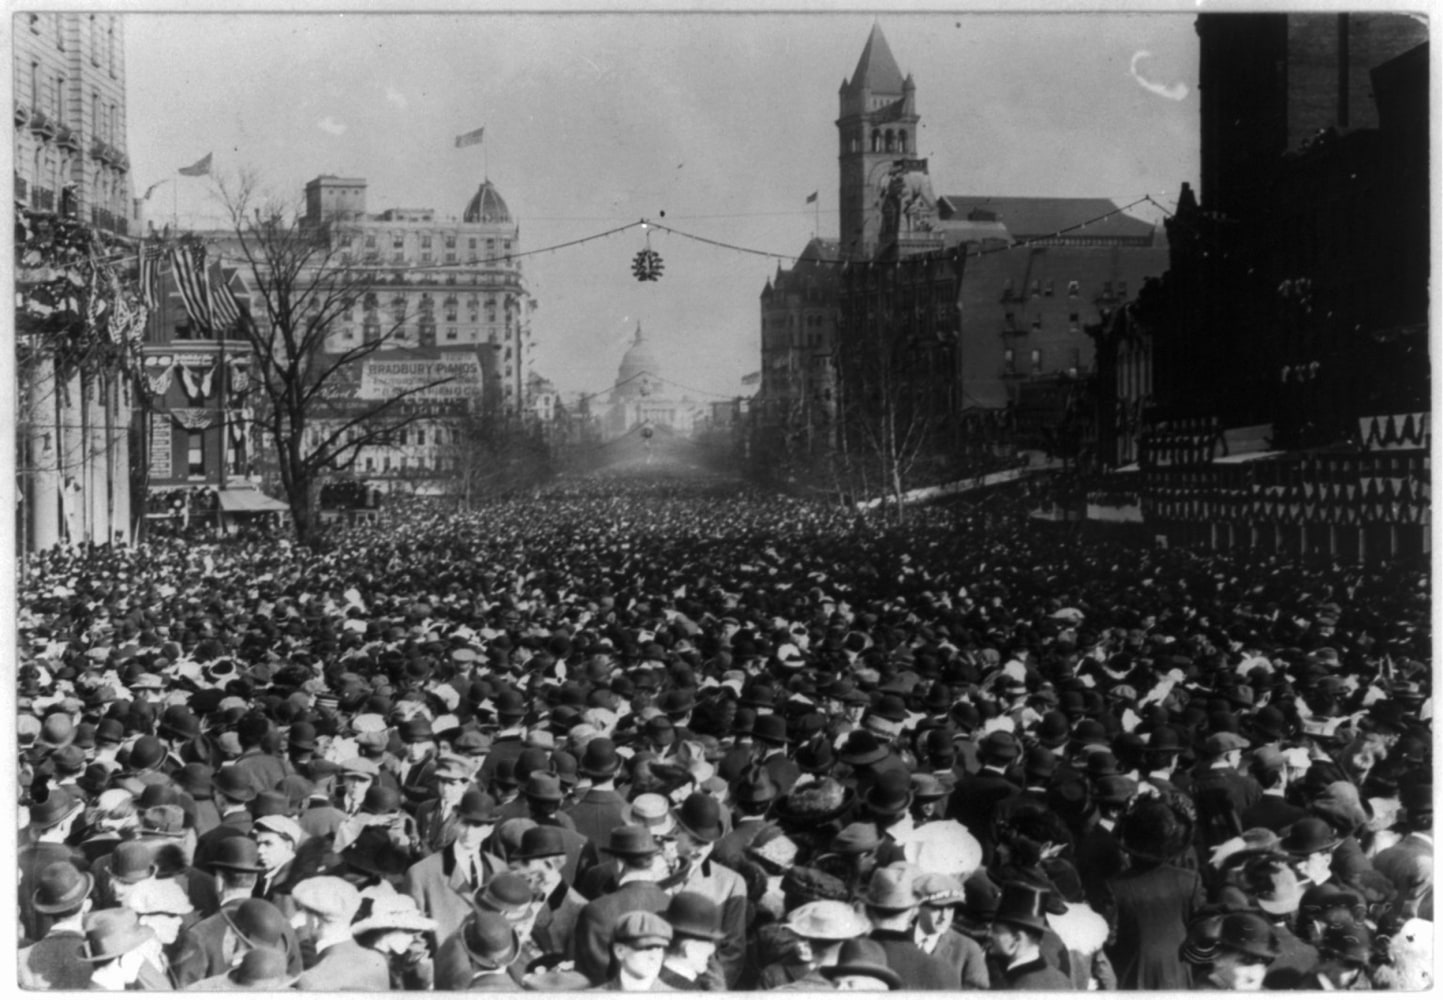 1913-suffrage-march-04_99a978adc699360e7